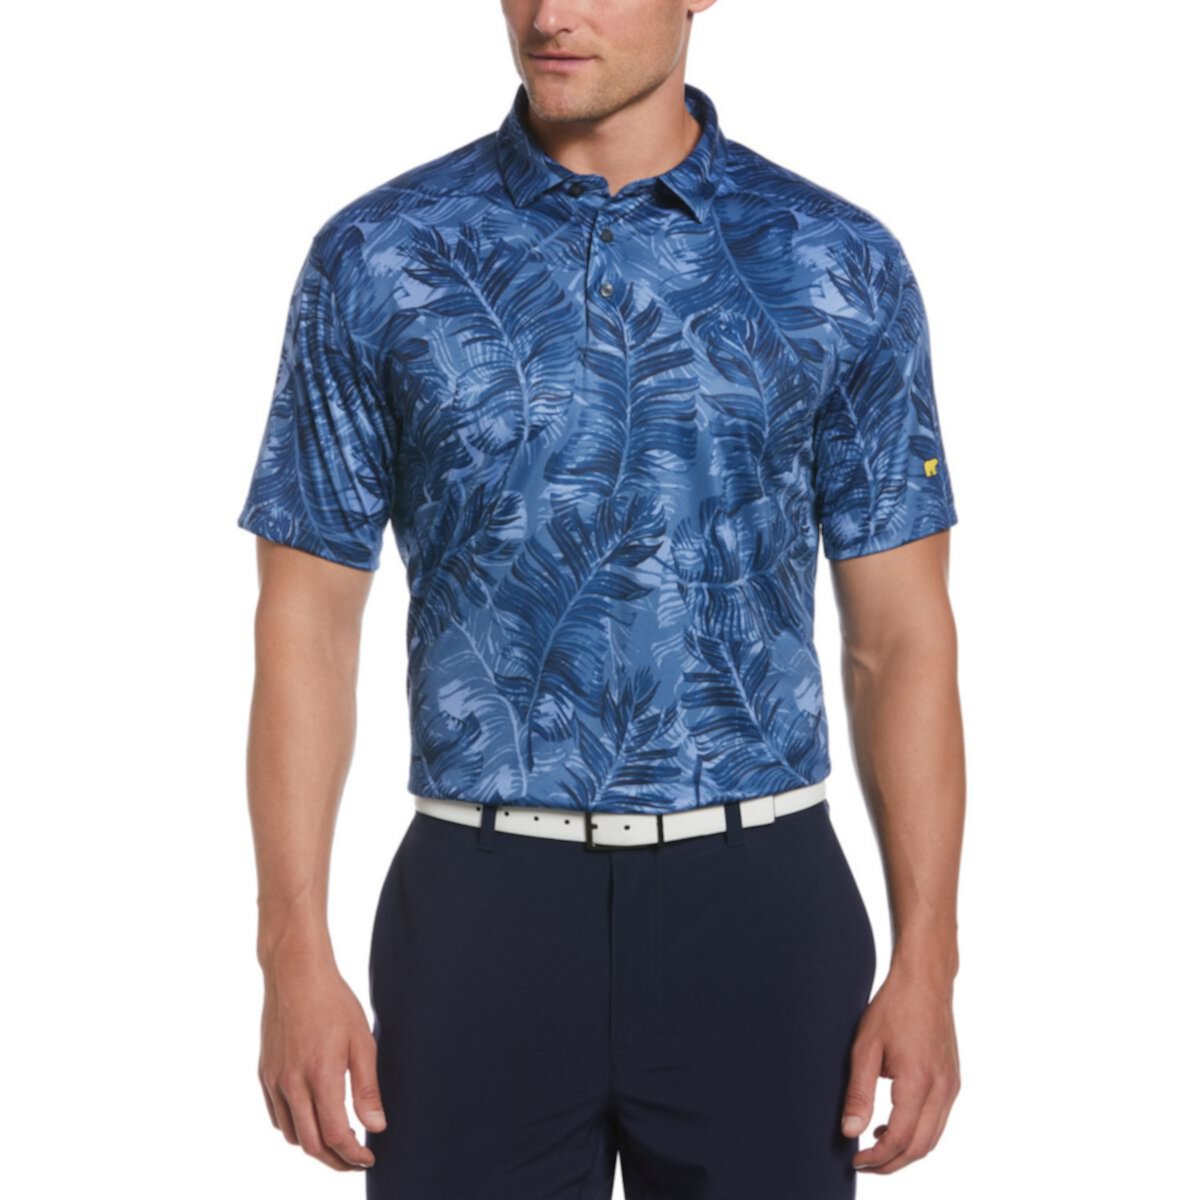 Мужская футболка-поло Jack Nicklaus стандартной посадки для гольфа Destination с пальмовым принтом Jack Nicklaus